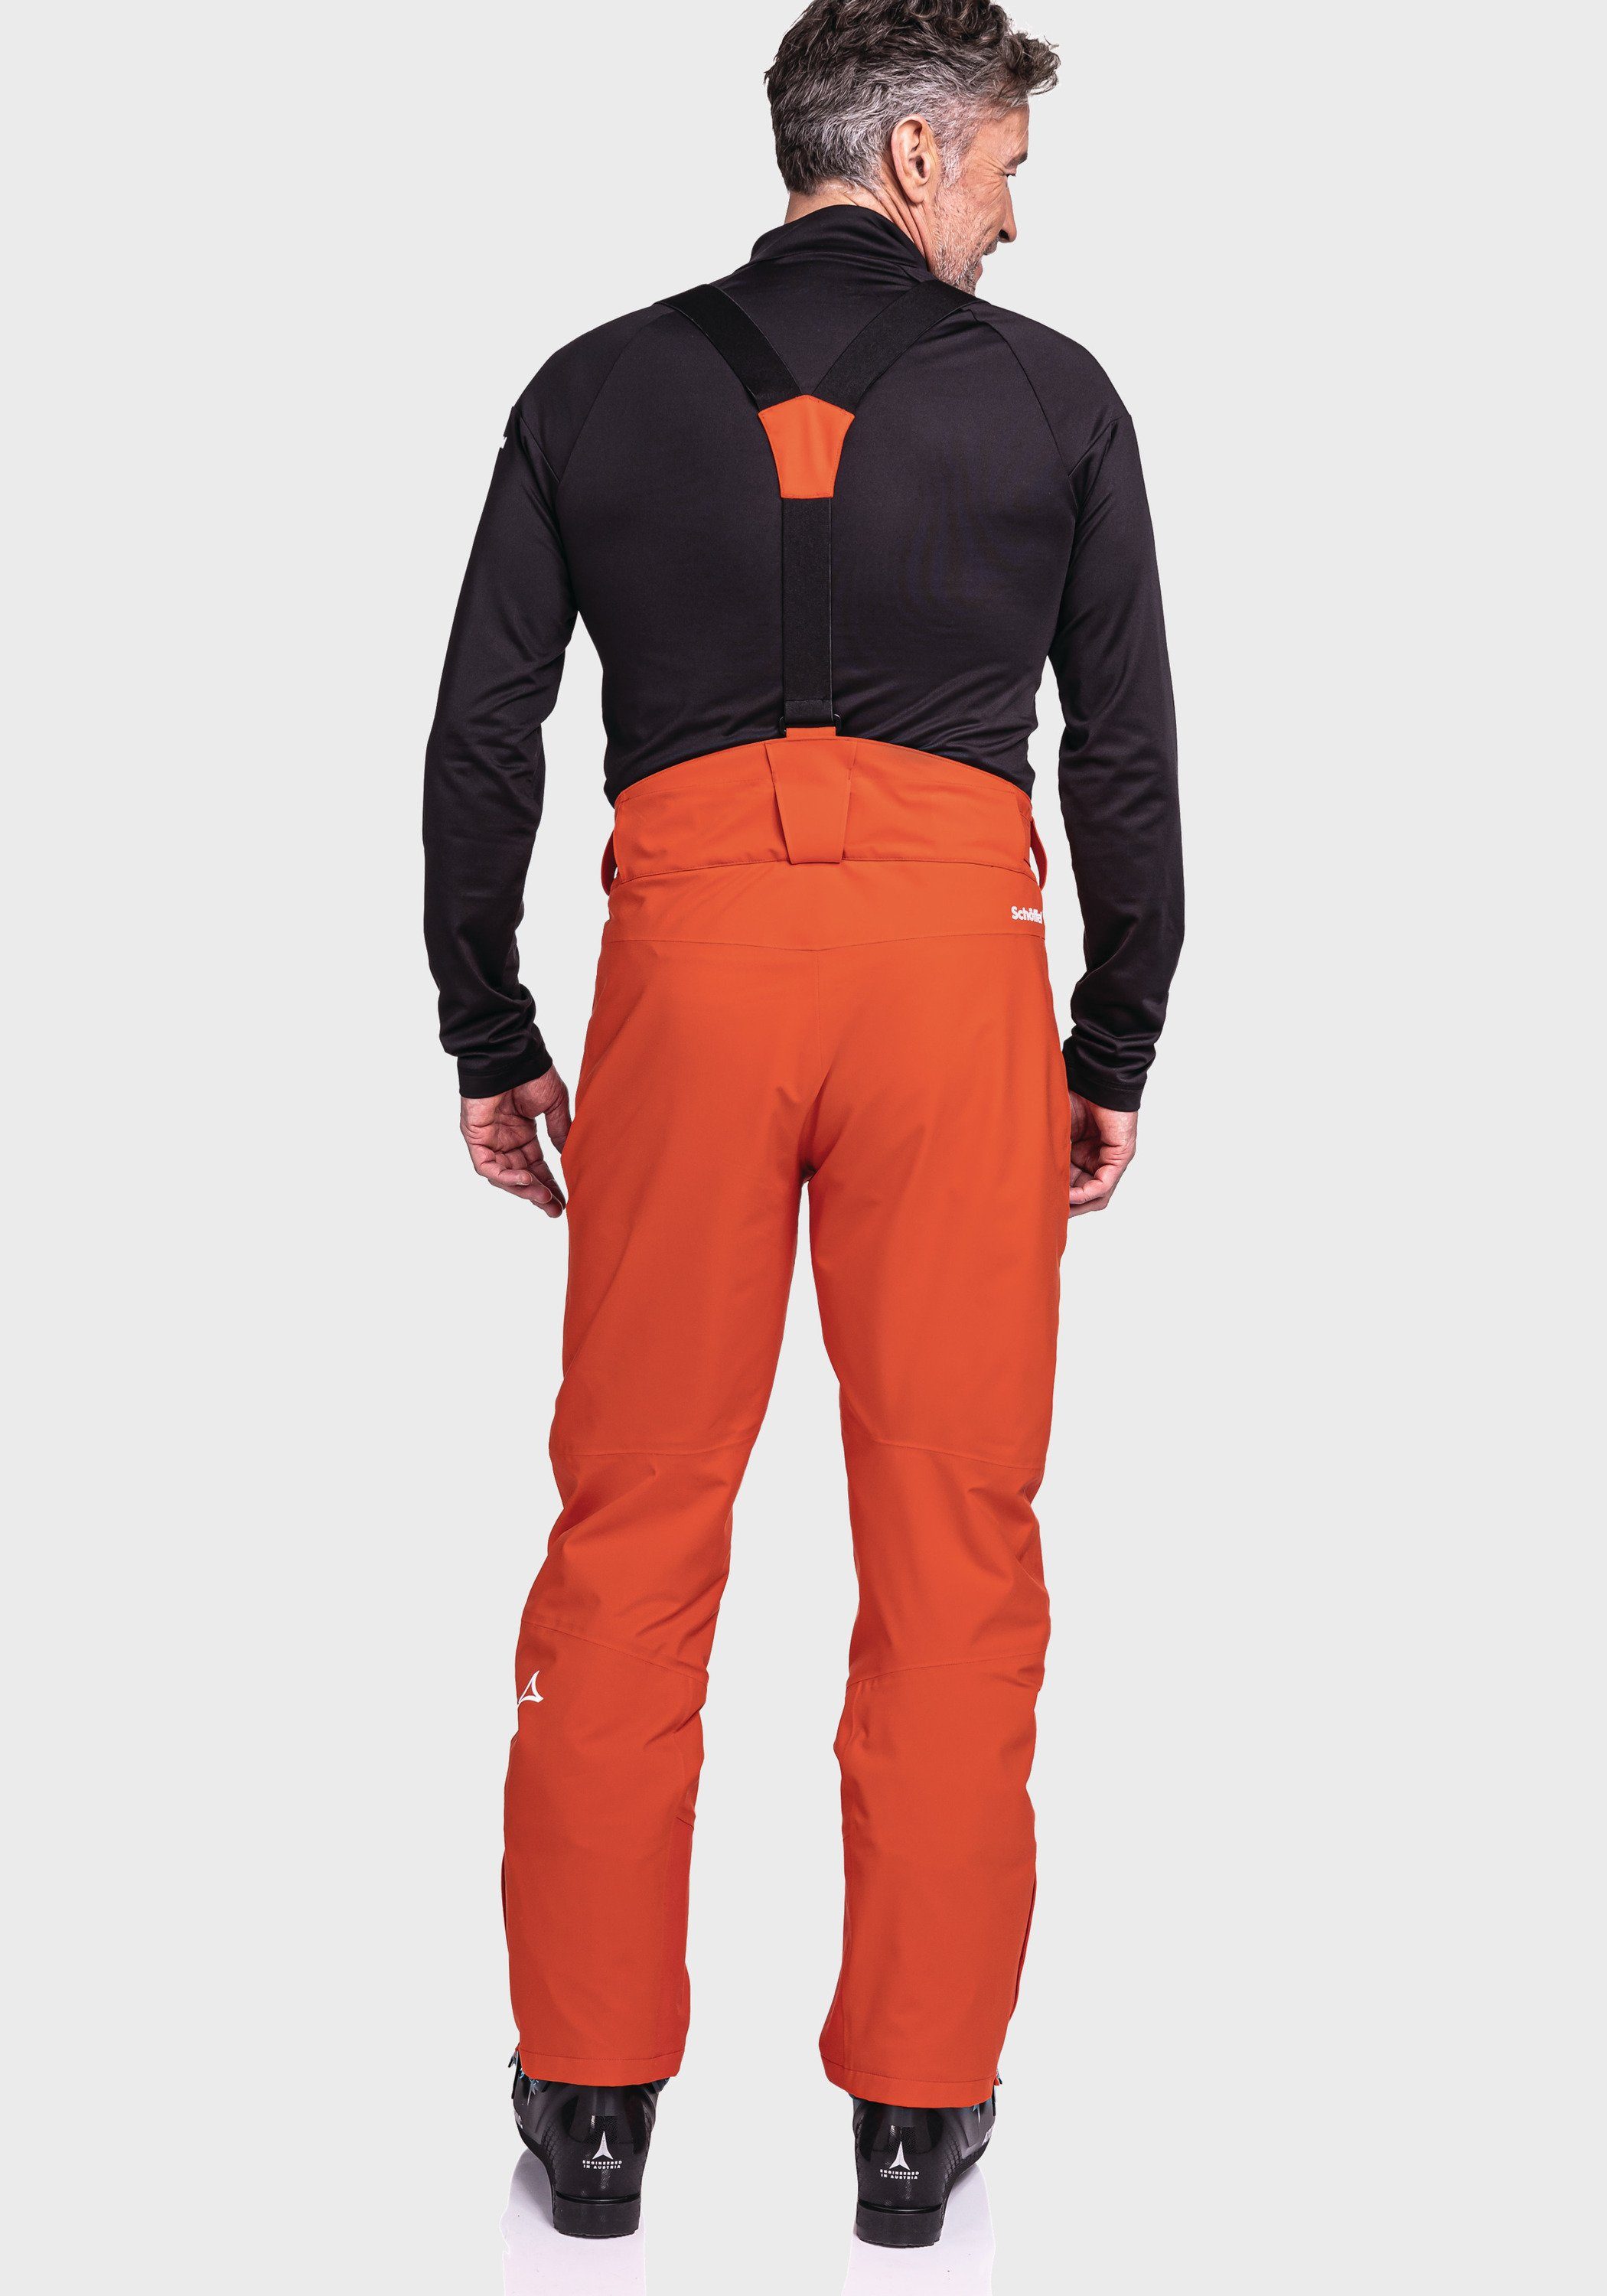 Pants orange M Weissach Ski Schöffel Latzhose